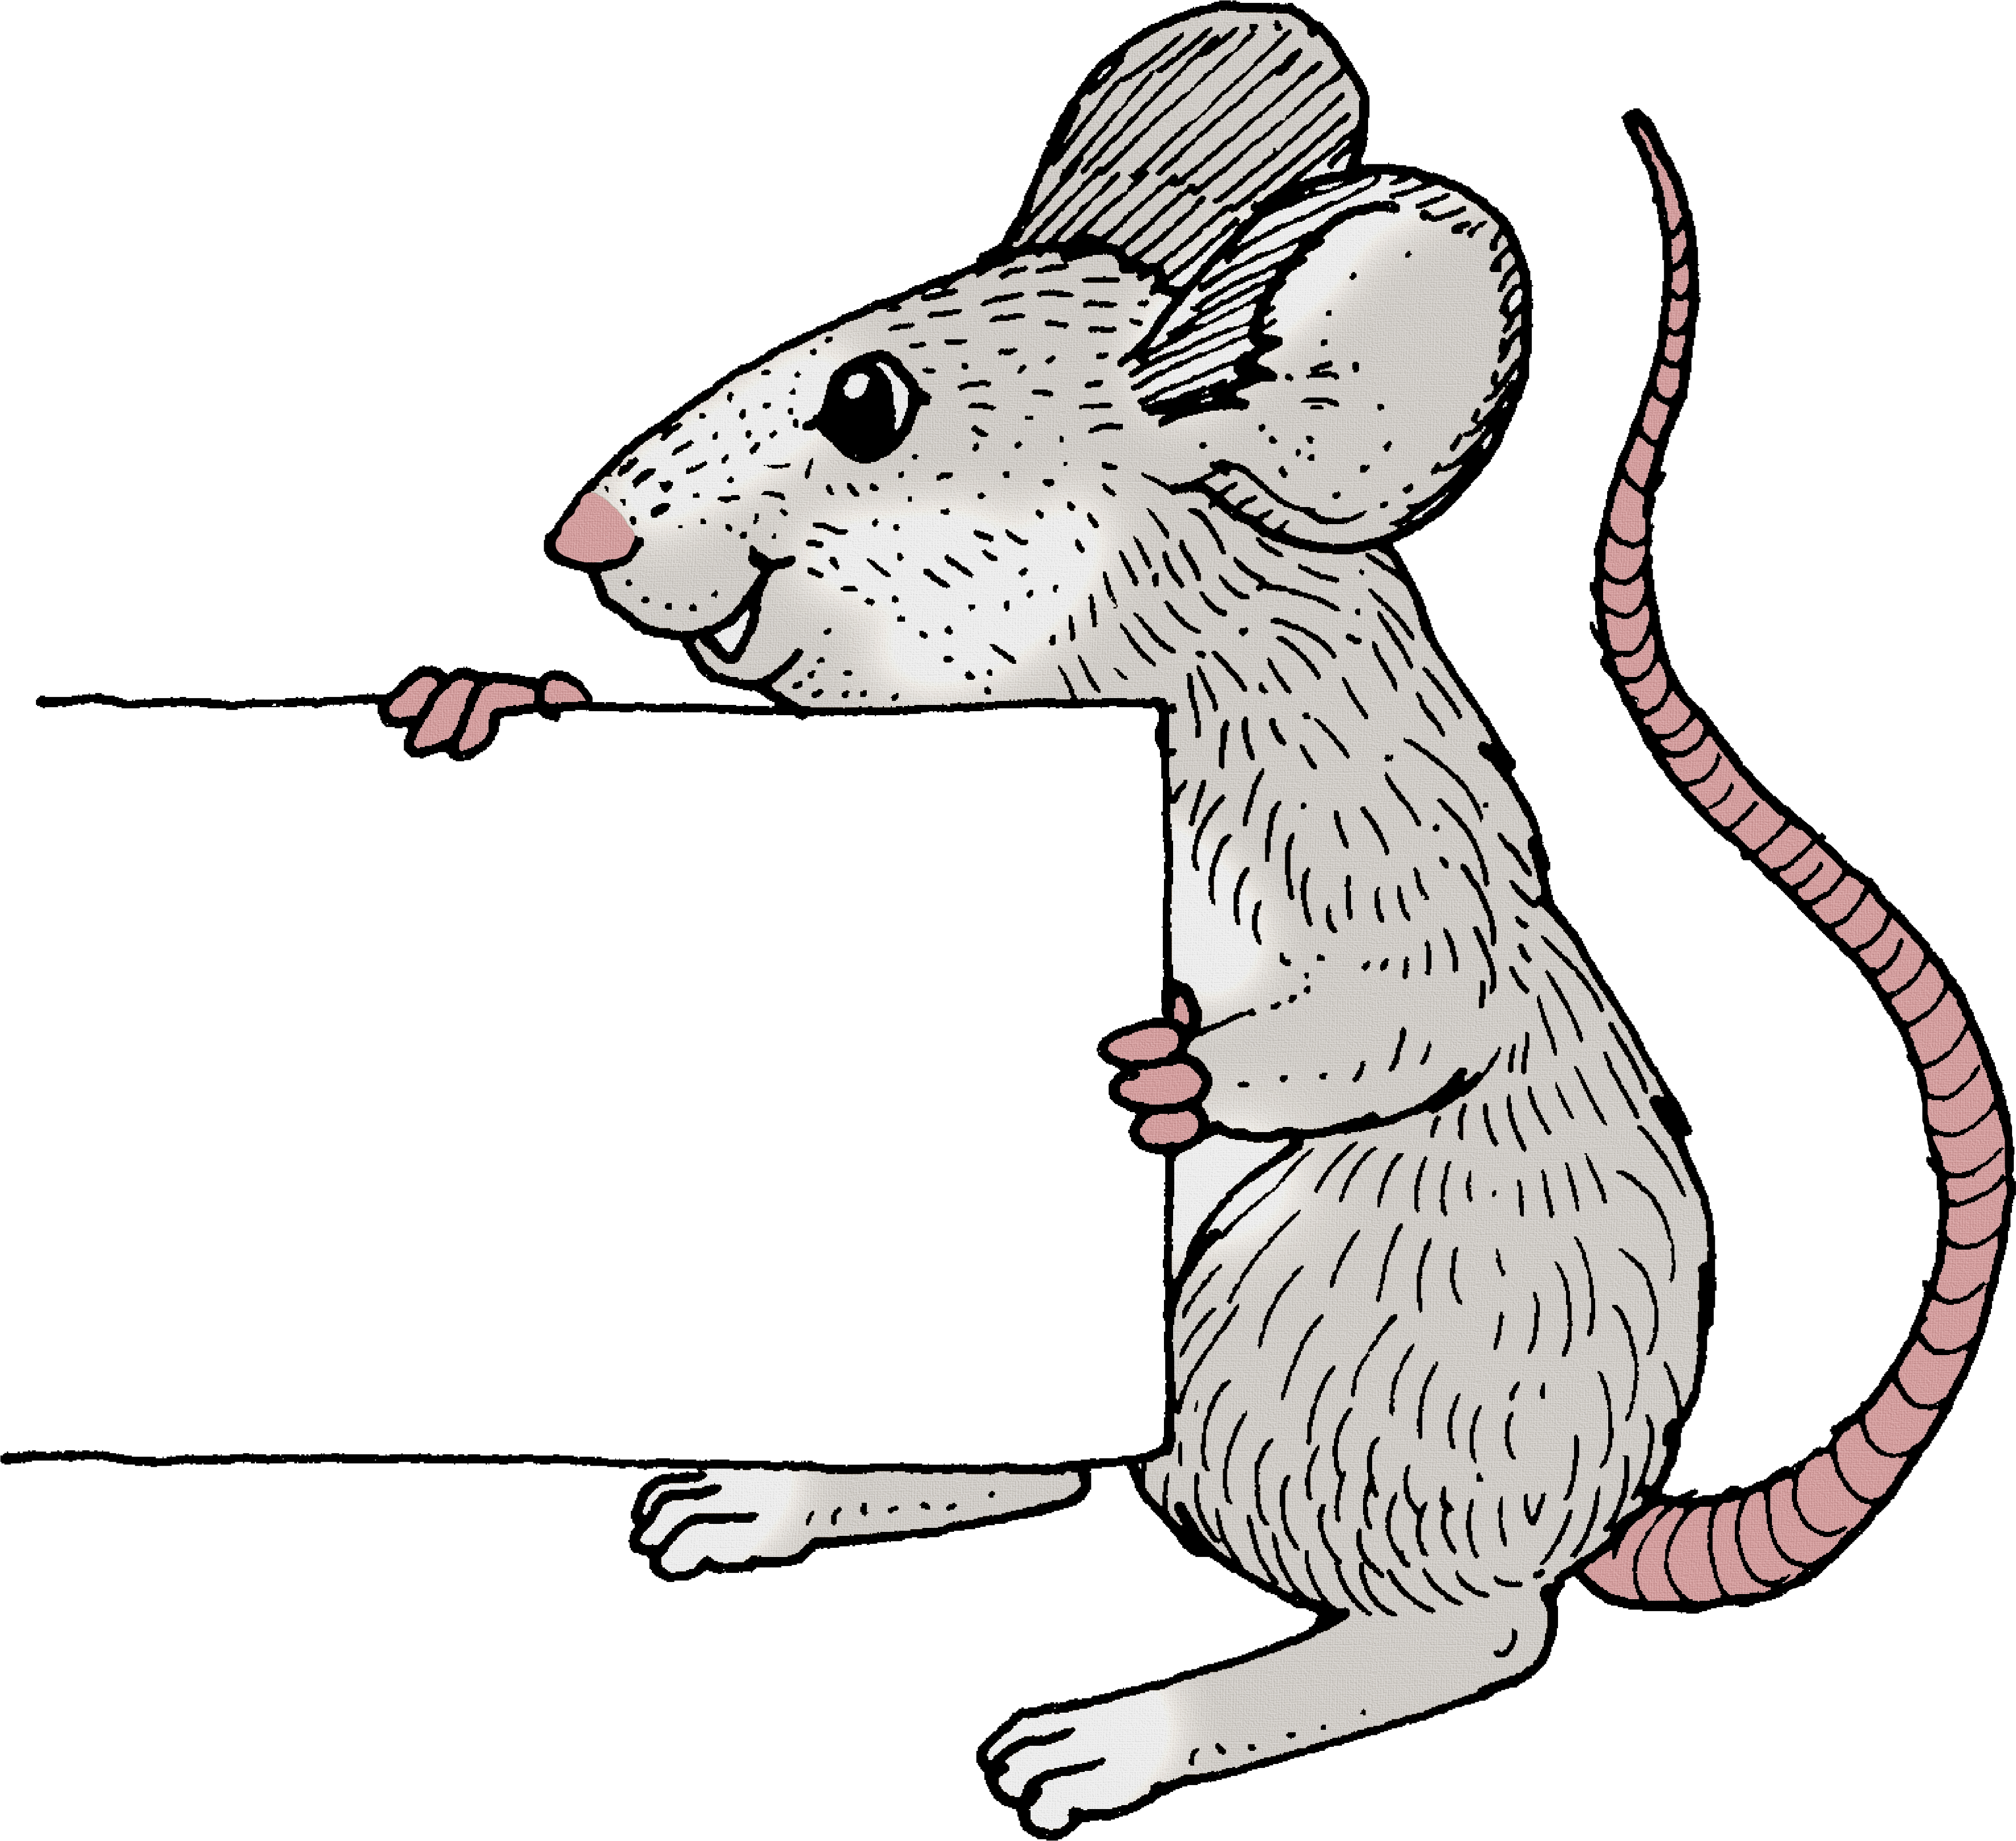 Рис мыши. Мышка с цифрами сбоку. Мышонок рисунок. Мышка на прозрачном фоне. Мышка картинки для детей нарисованные.